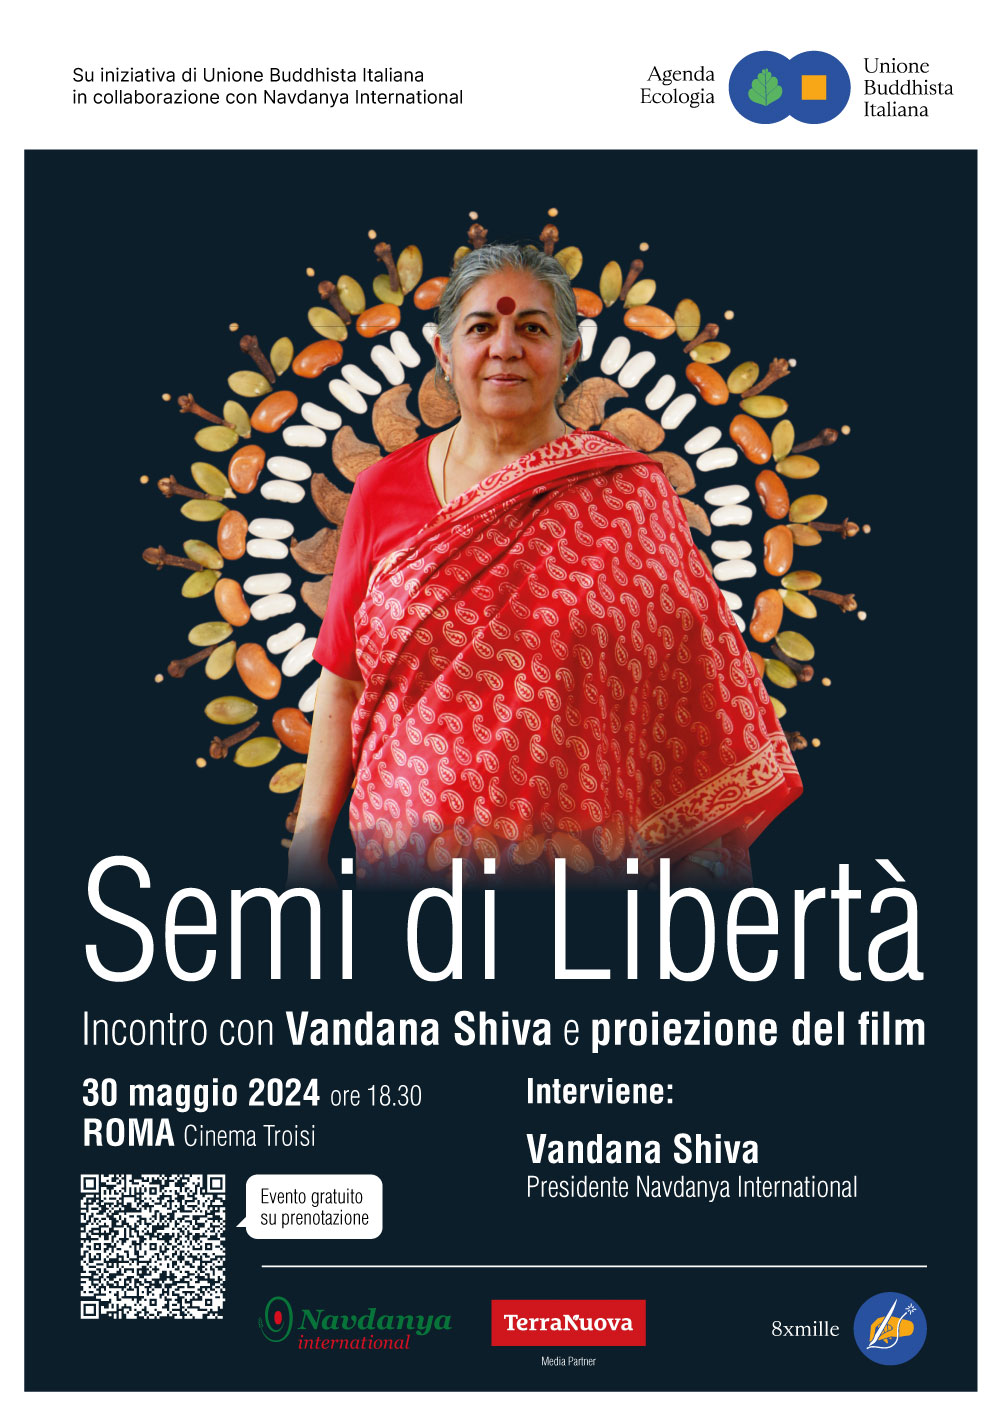 Semi di Libertà: Vandana Shiva presenta il documentario sulla sua vita e dialoga con il pubblico sulla biodiversità e sovranità alimentare
